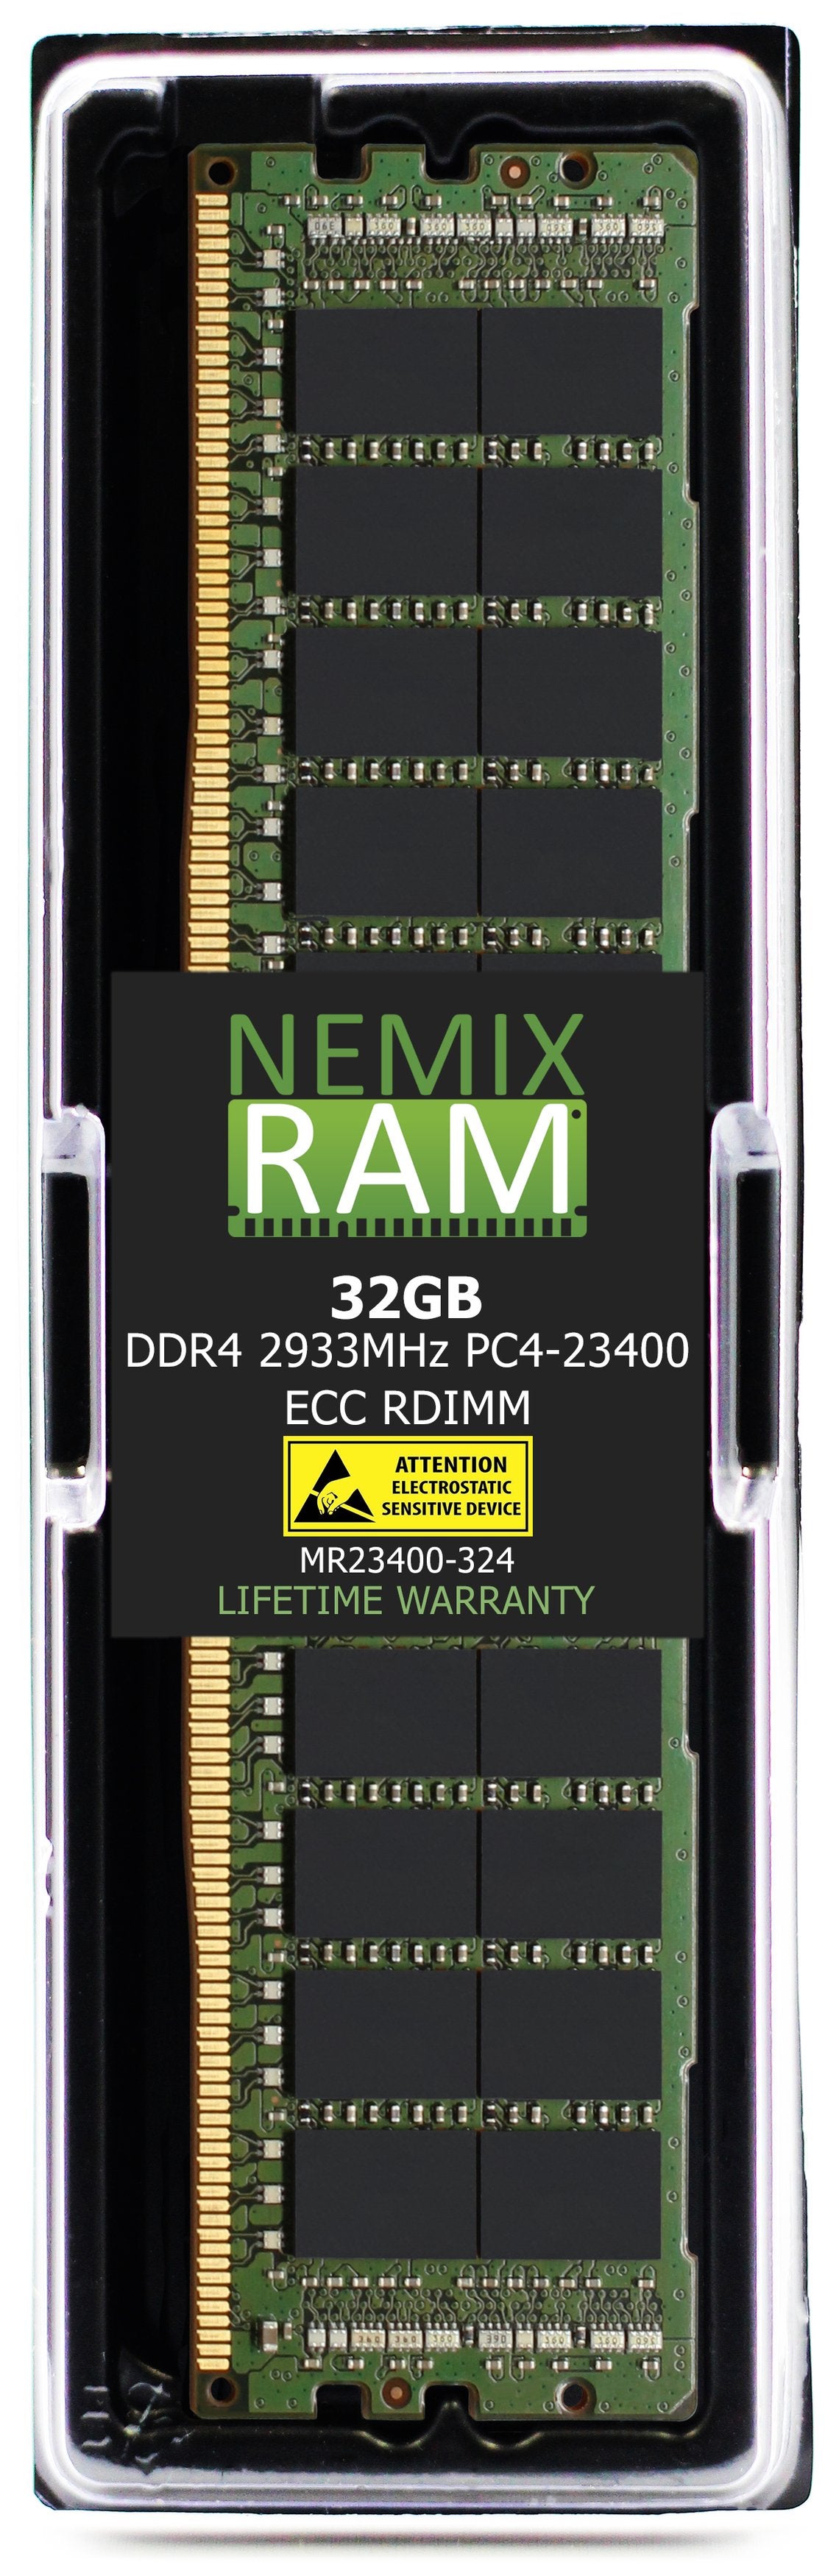 DELL PowerEdge EMC XE2420 Server Memory Upgrade